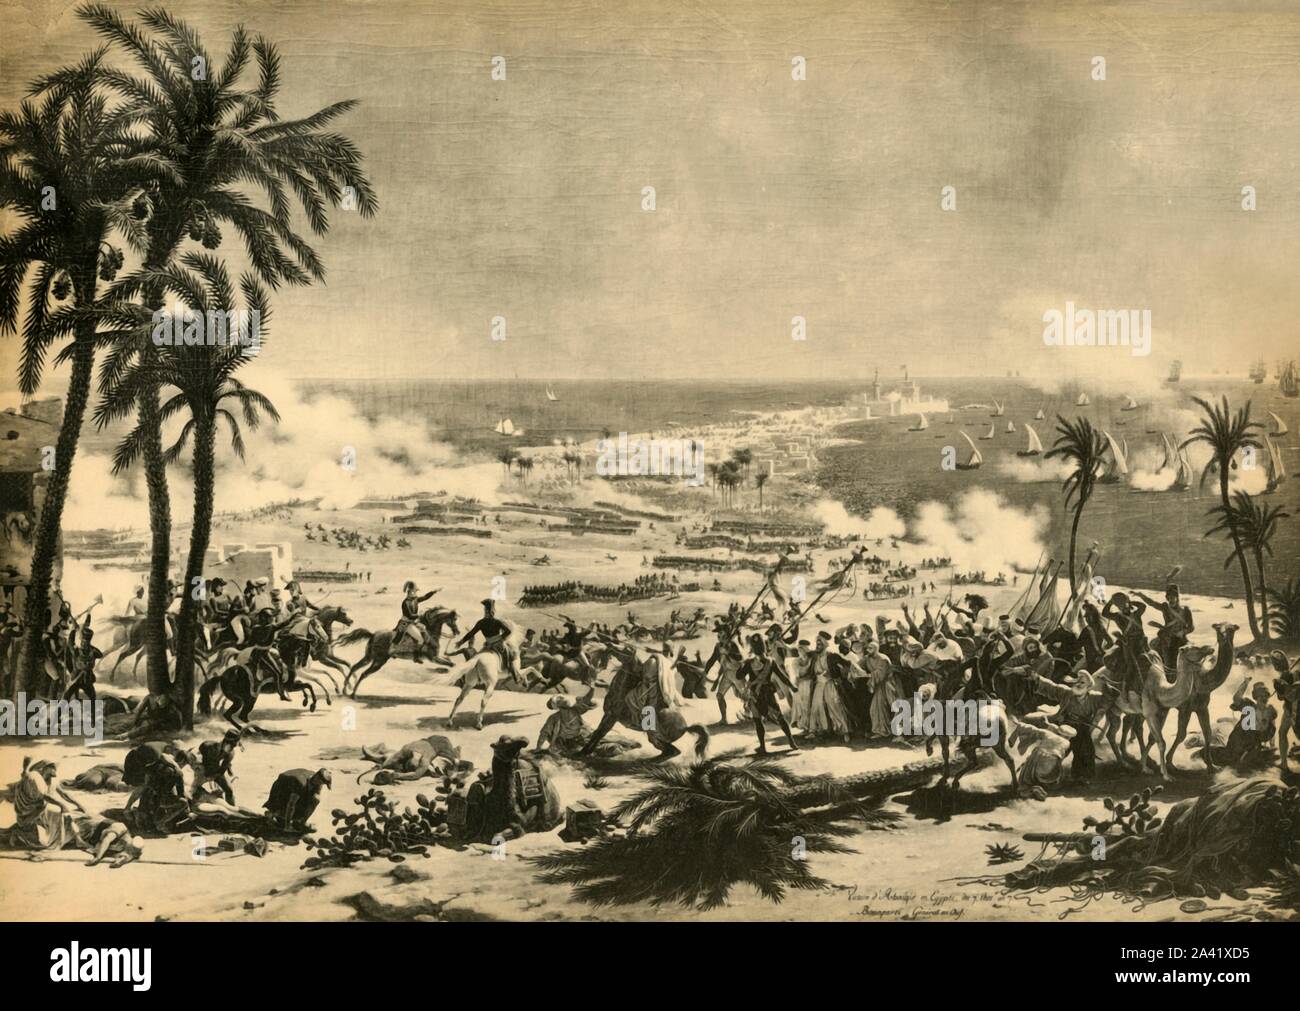 La bataille d'Aboukir, 25 juillet 1799, (1921). Représentation d'une bataille entre les Turcs sous Mustafa et les Français commandés par Napoléon, s'est battu à Aboukir (Abu Qir, sur la côte nord de l'Egypte), au cours de la campagne d'Égypte. Commandant de cavalerie français Murat a poussé les Turcs à la mer, et Mustafa Pacha, fait prisonnier, est conduit au général Napoléon Bonaparte. Après une peinture faite c1801 par Louis-Fran&# xe7;ois Lejeune, dans la collection de la mus&# xe9;e de l'Histoire de France, palais de Versailles, France. À partir de "Napoléon", par Raymond Guyot. [H. Floury, Paris, 1921] Banque D'Images